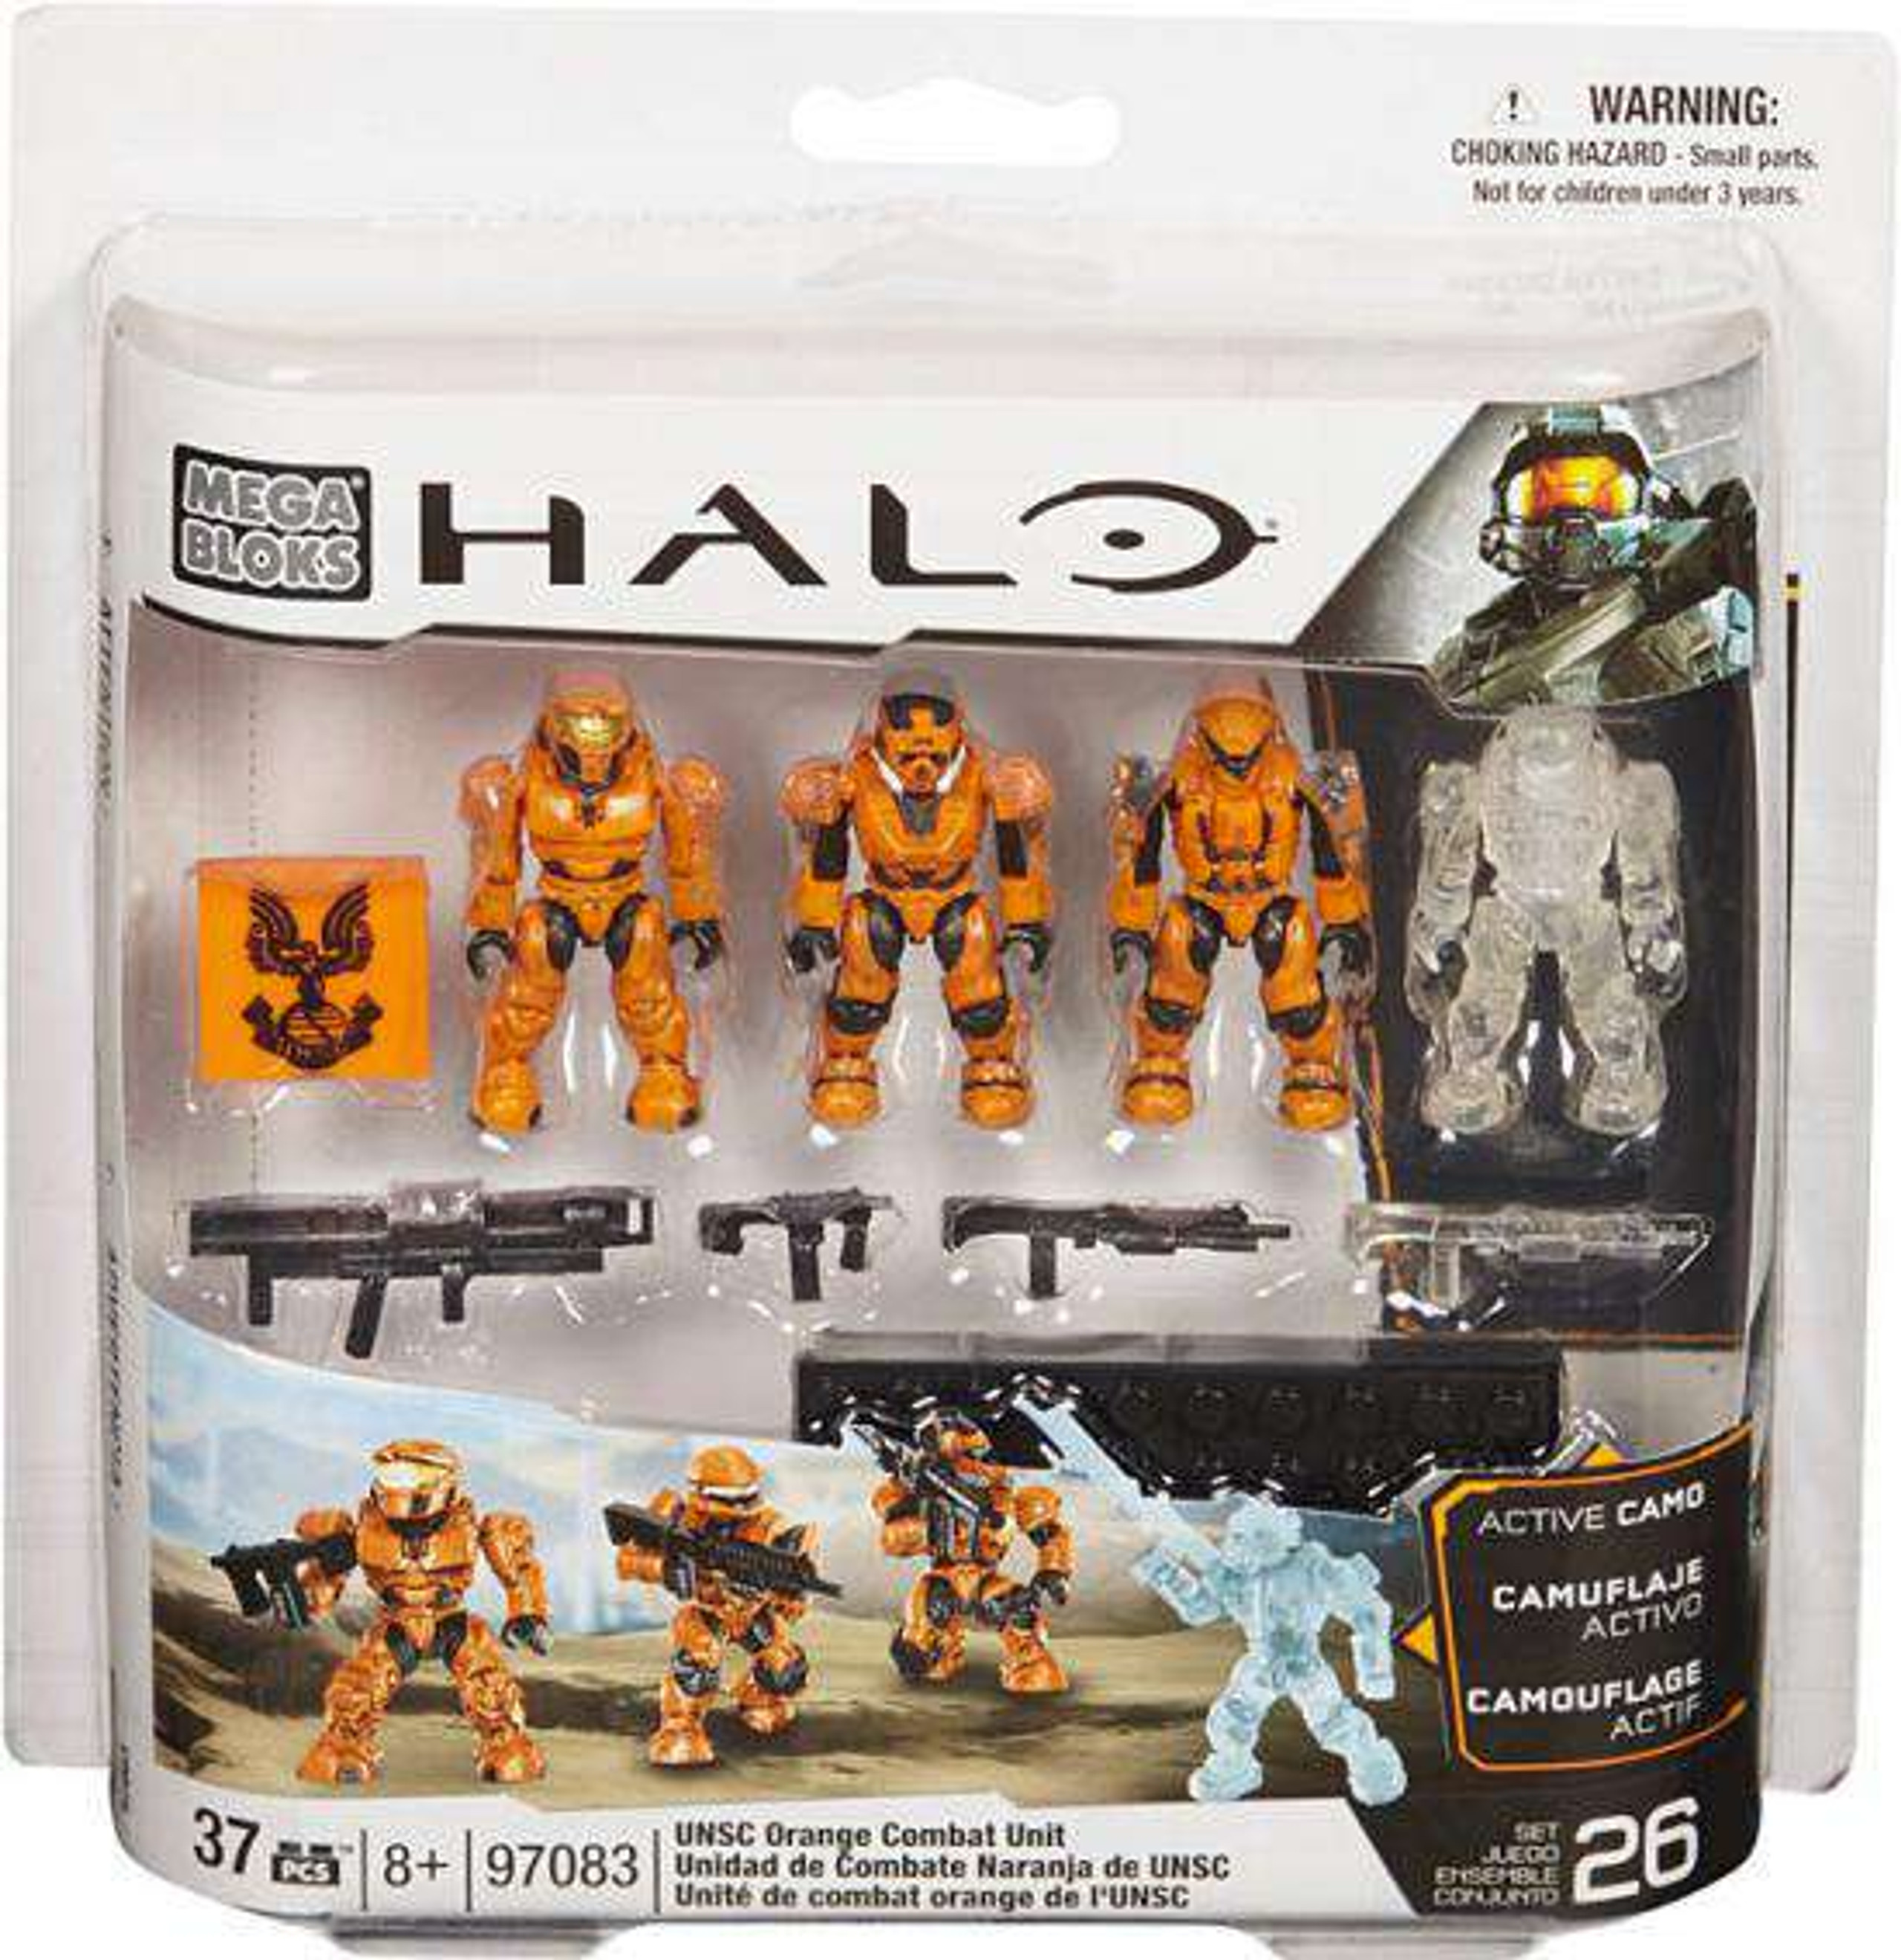 Mega Bloks Halo UNSC Combat Orange Unit Set 97083 - ToyWiz